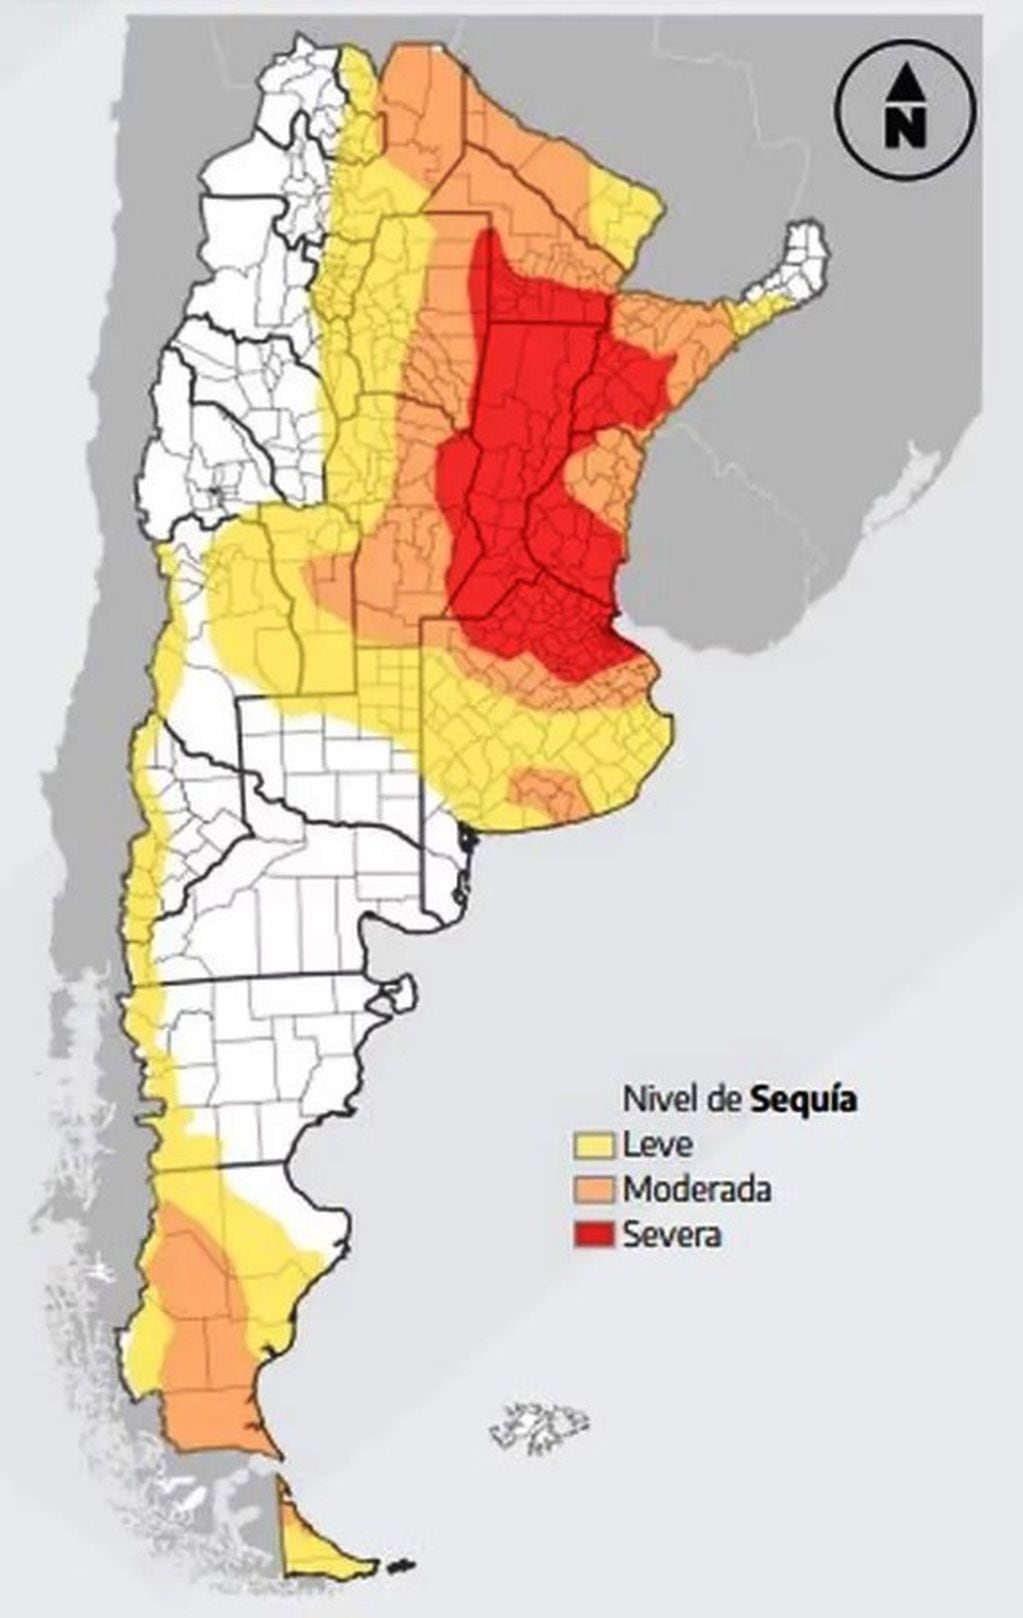 La evolución de la sequía: Mendoza descendió a leve.